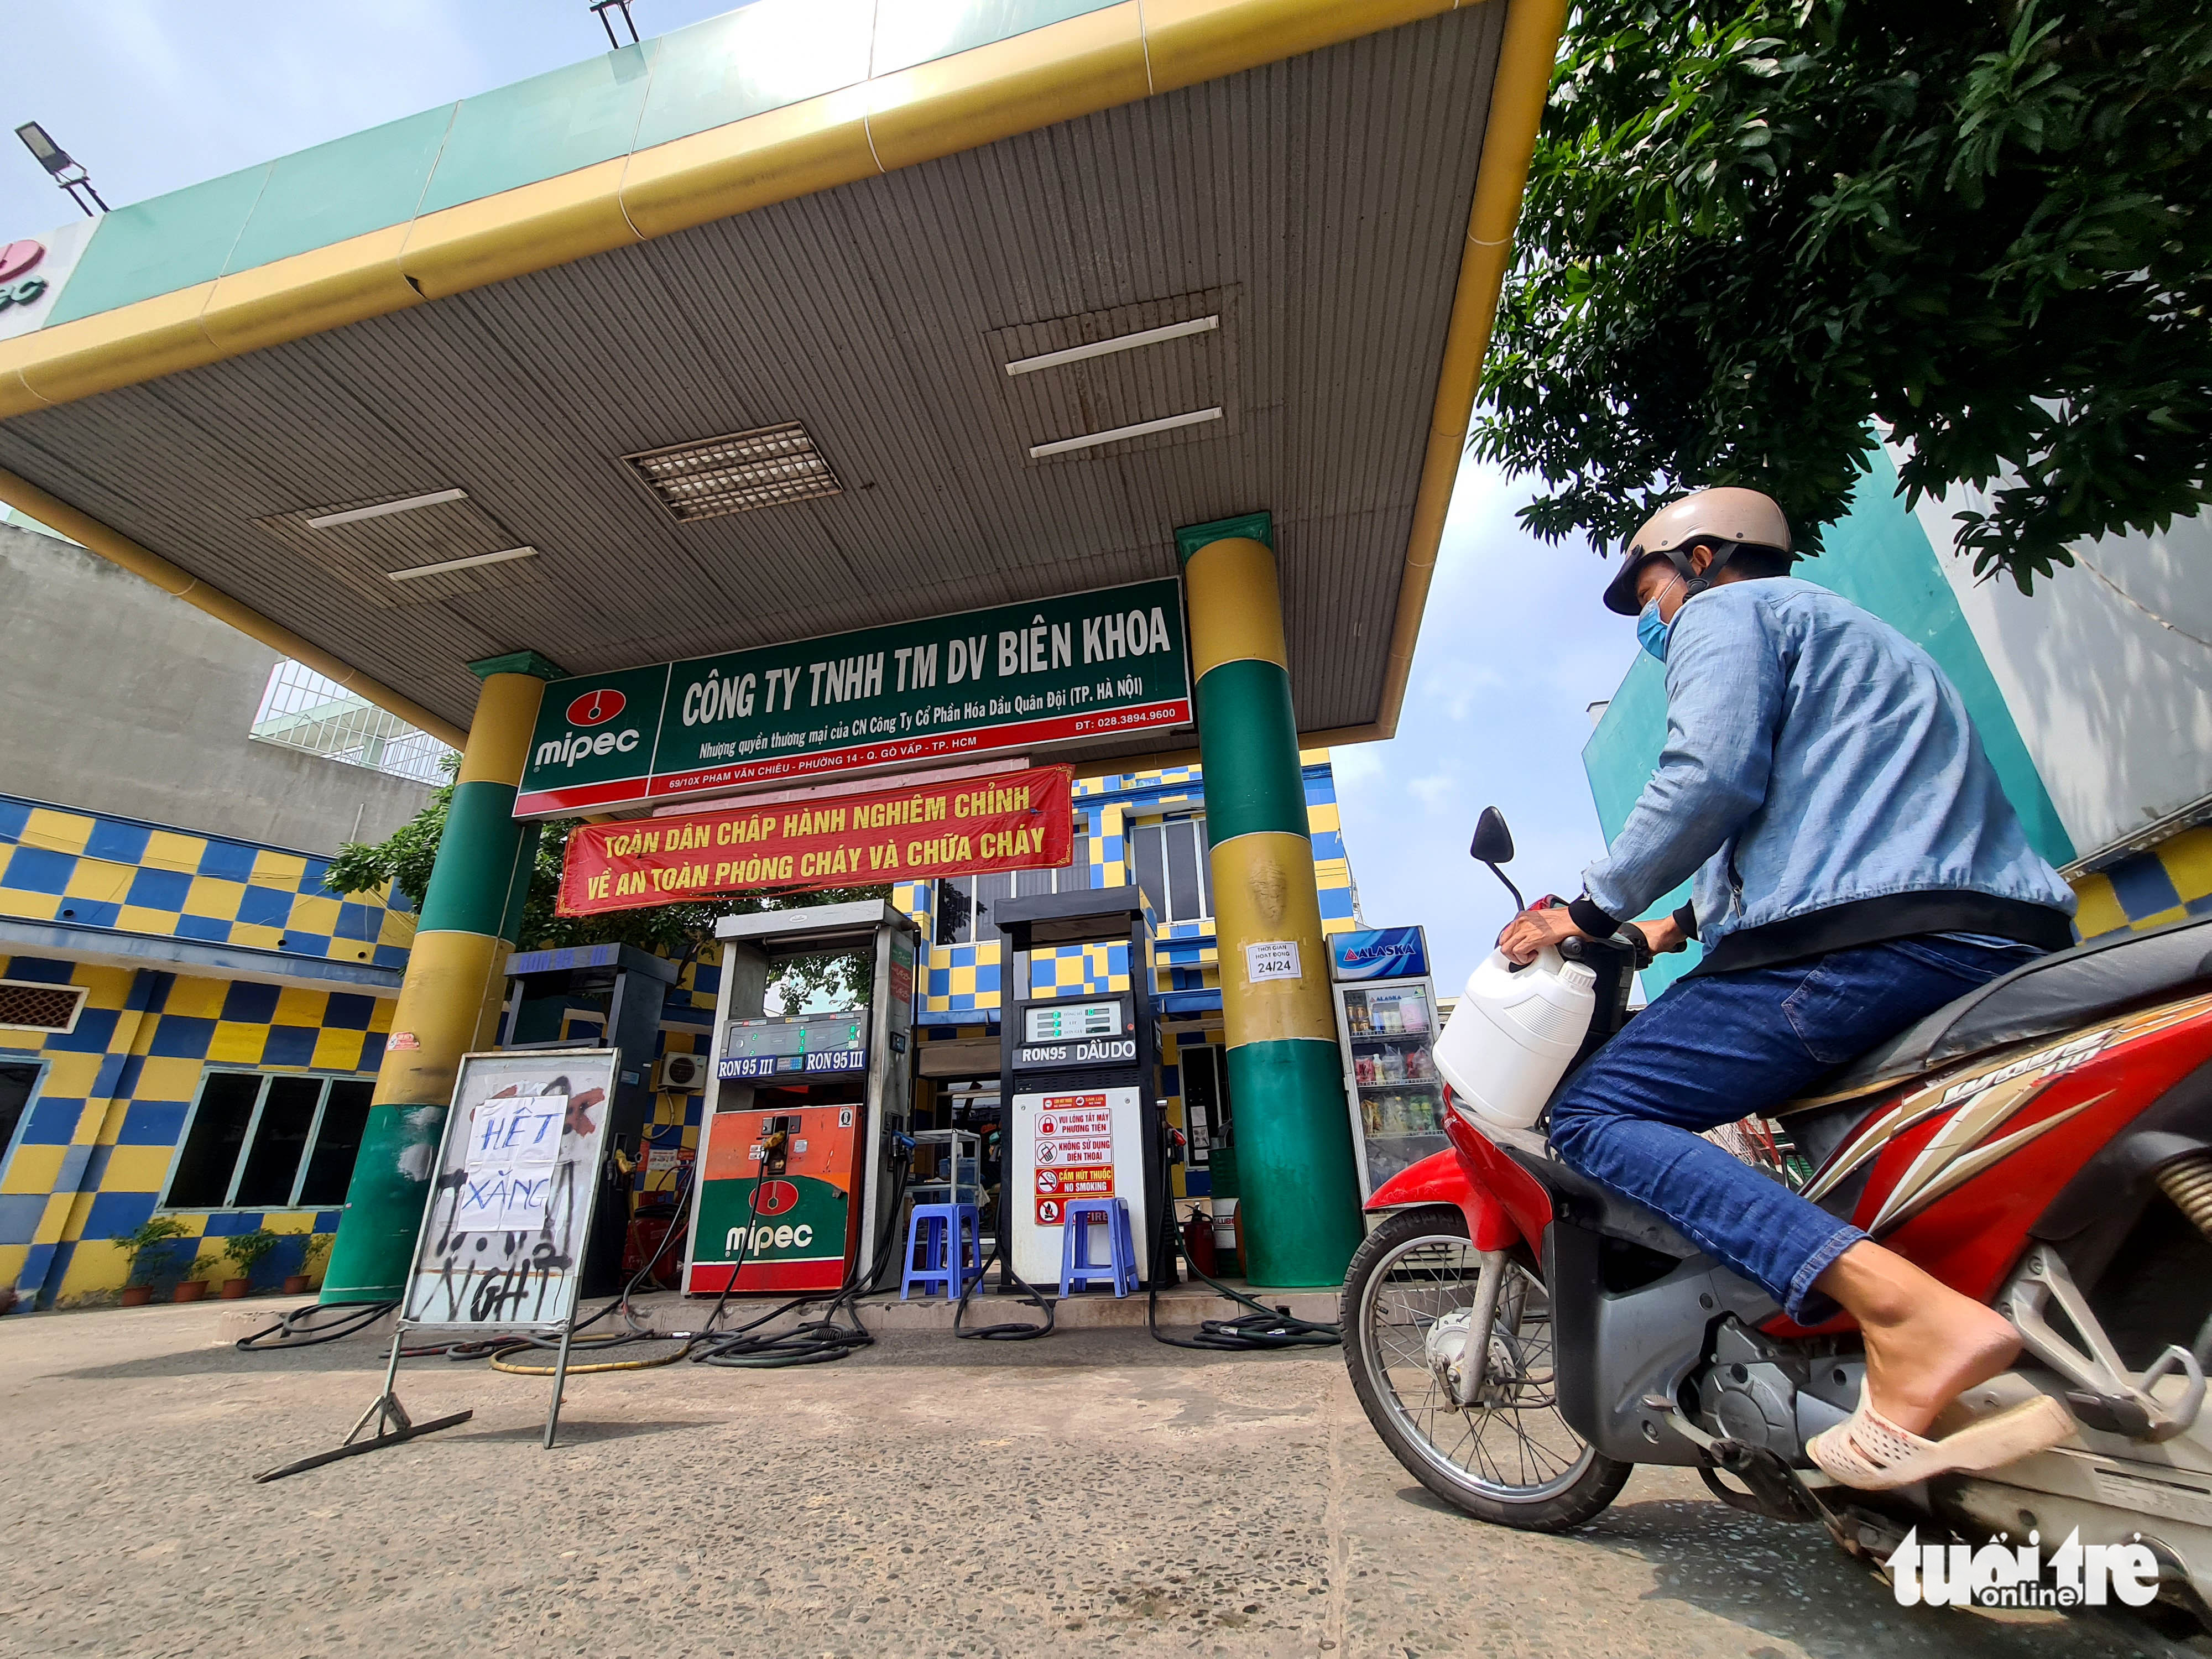 Ho Chi Minh City residents struggle to buy gasoline